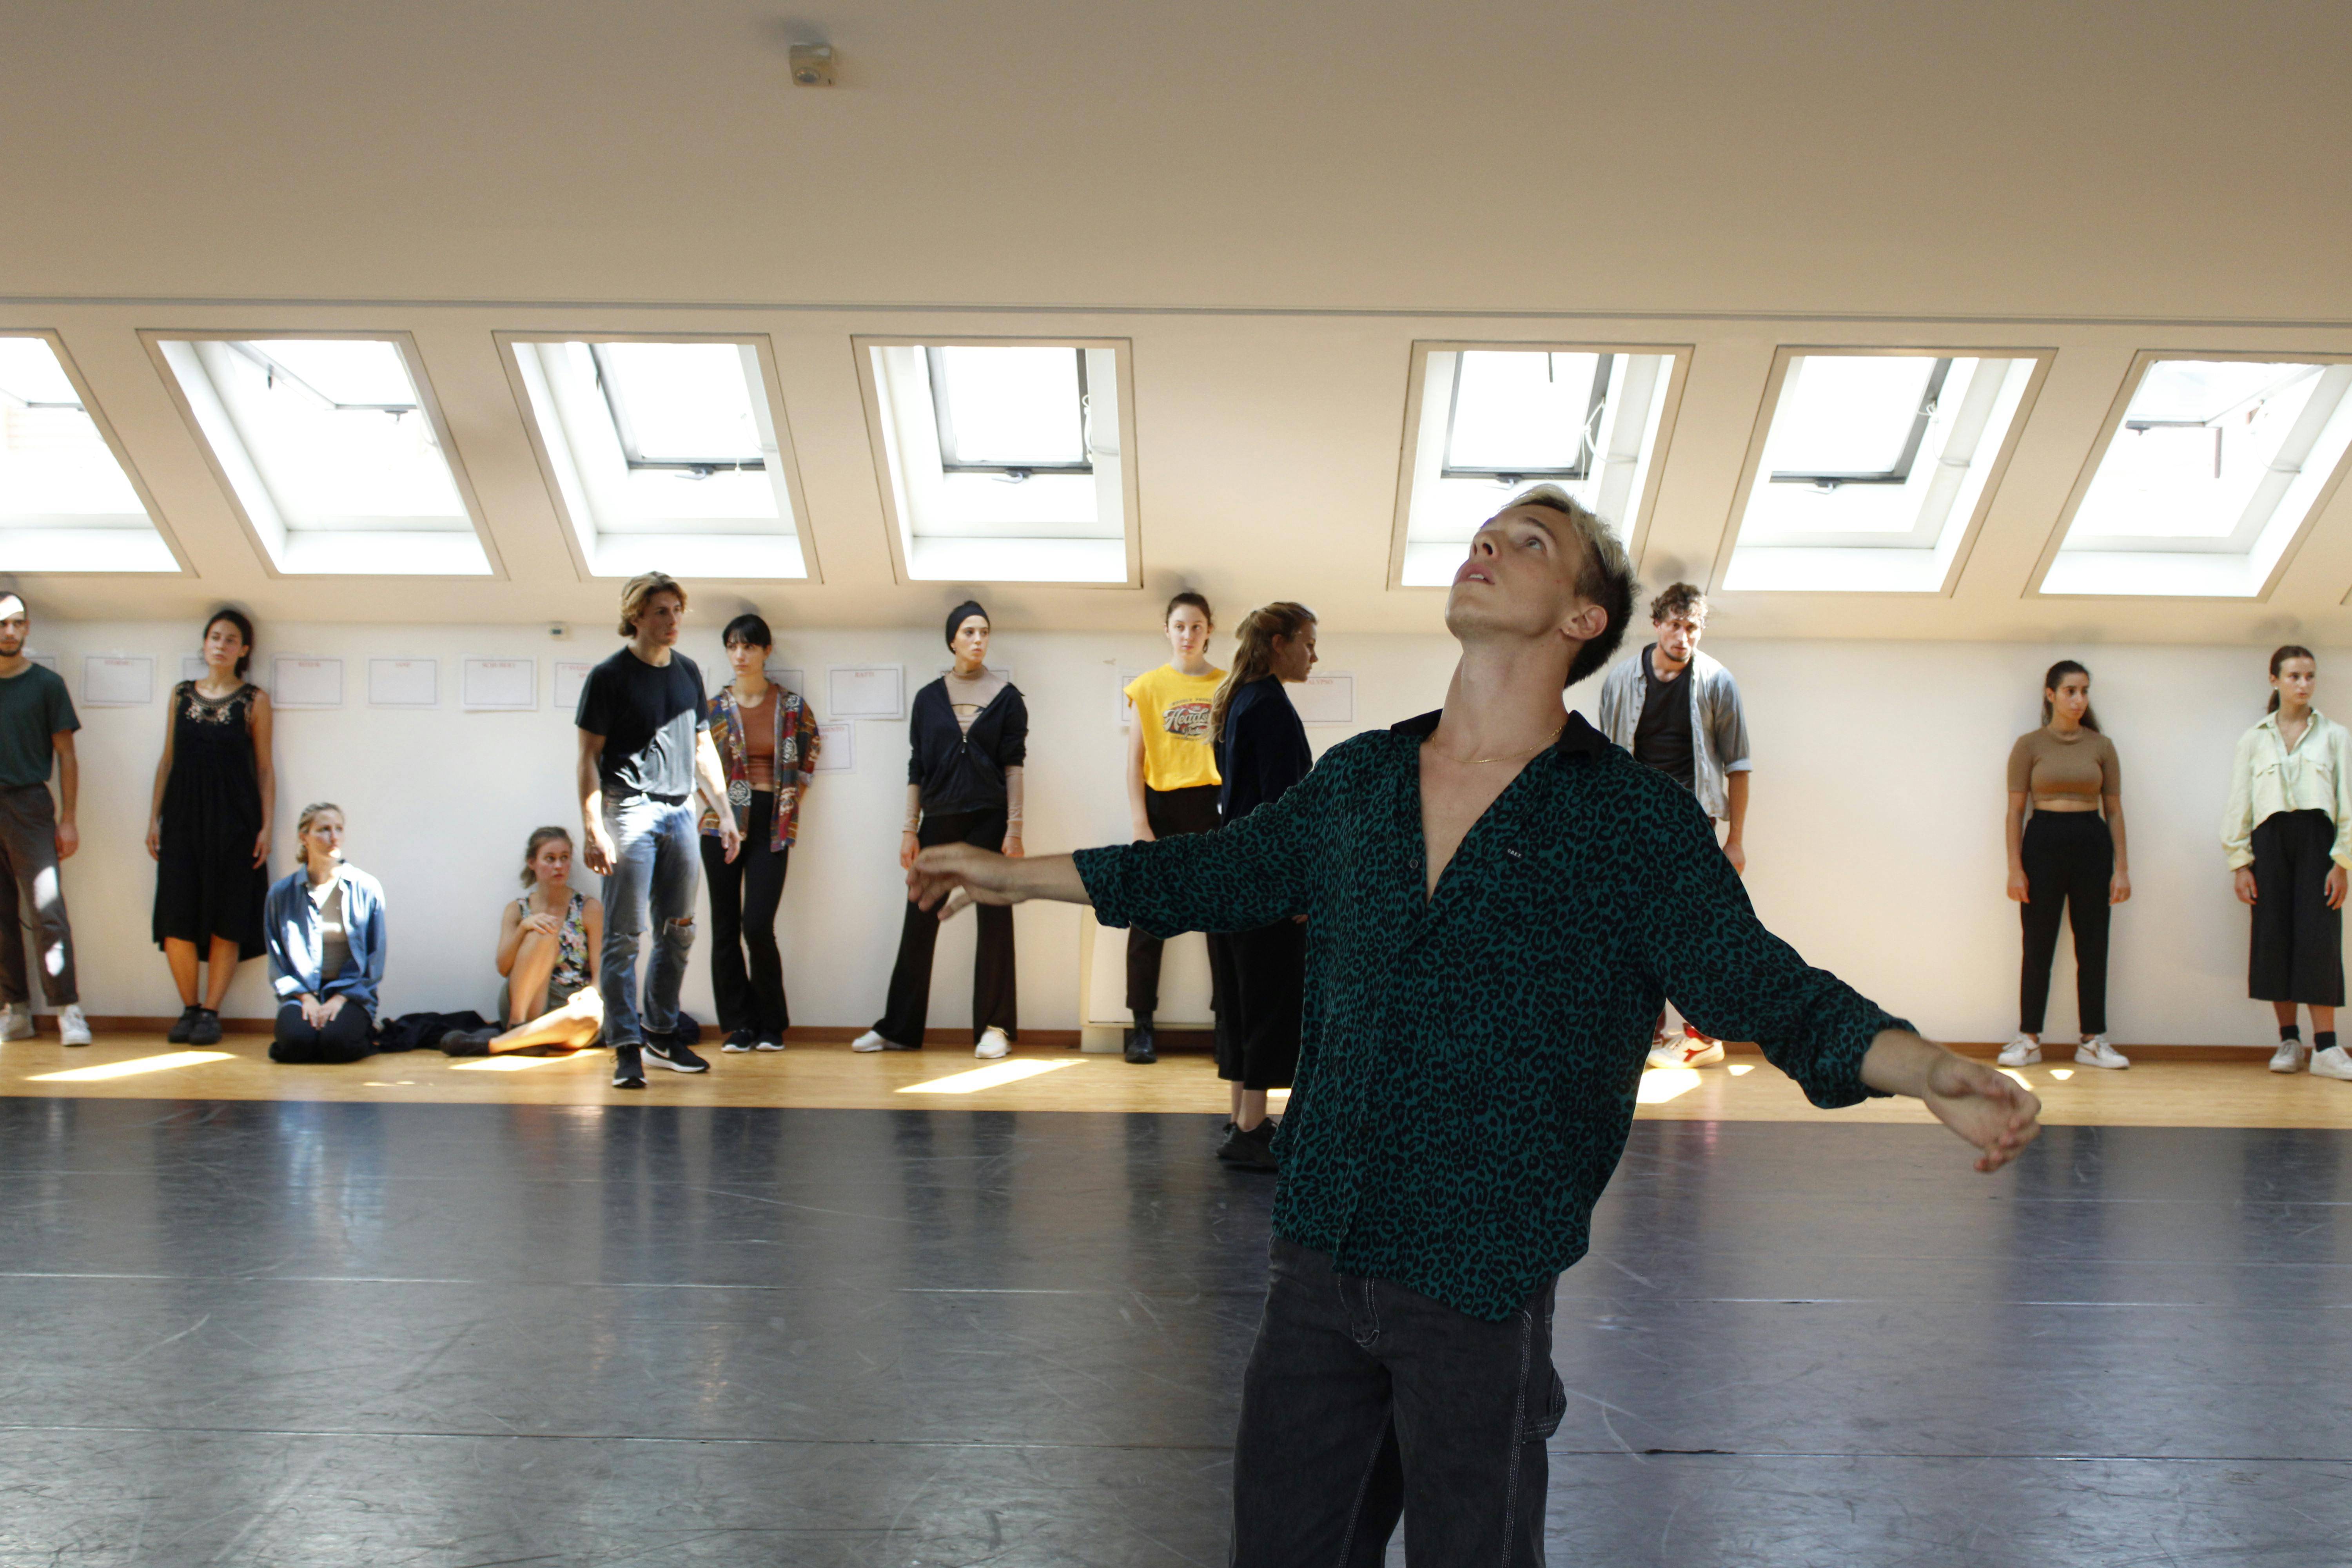 Un danzatore, in piedi al centro dello Studio, apre le braccia guardando verso l'alto. A fondo sala un gruppo di performer, appoggiati alla parete, osservano.